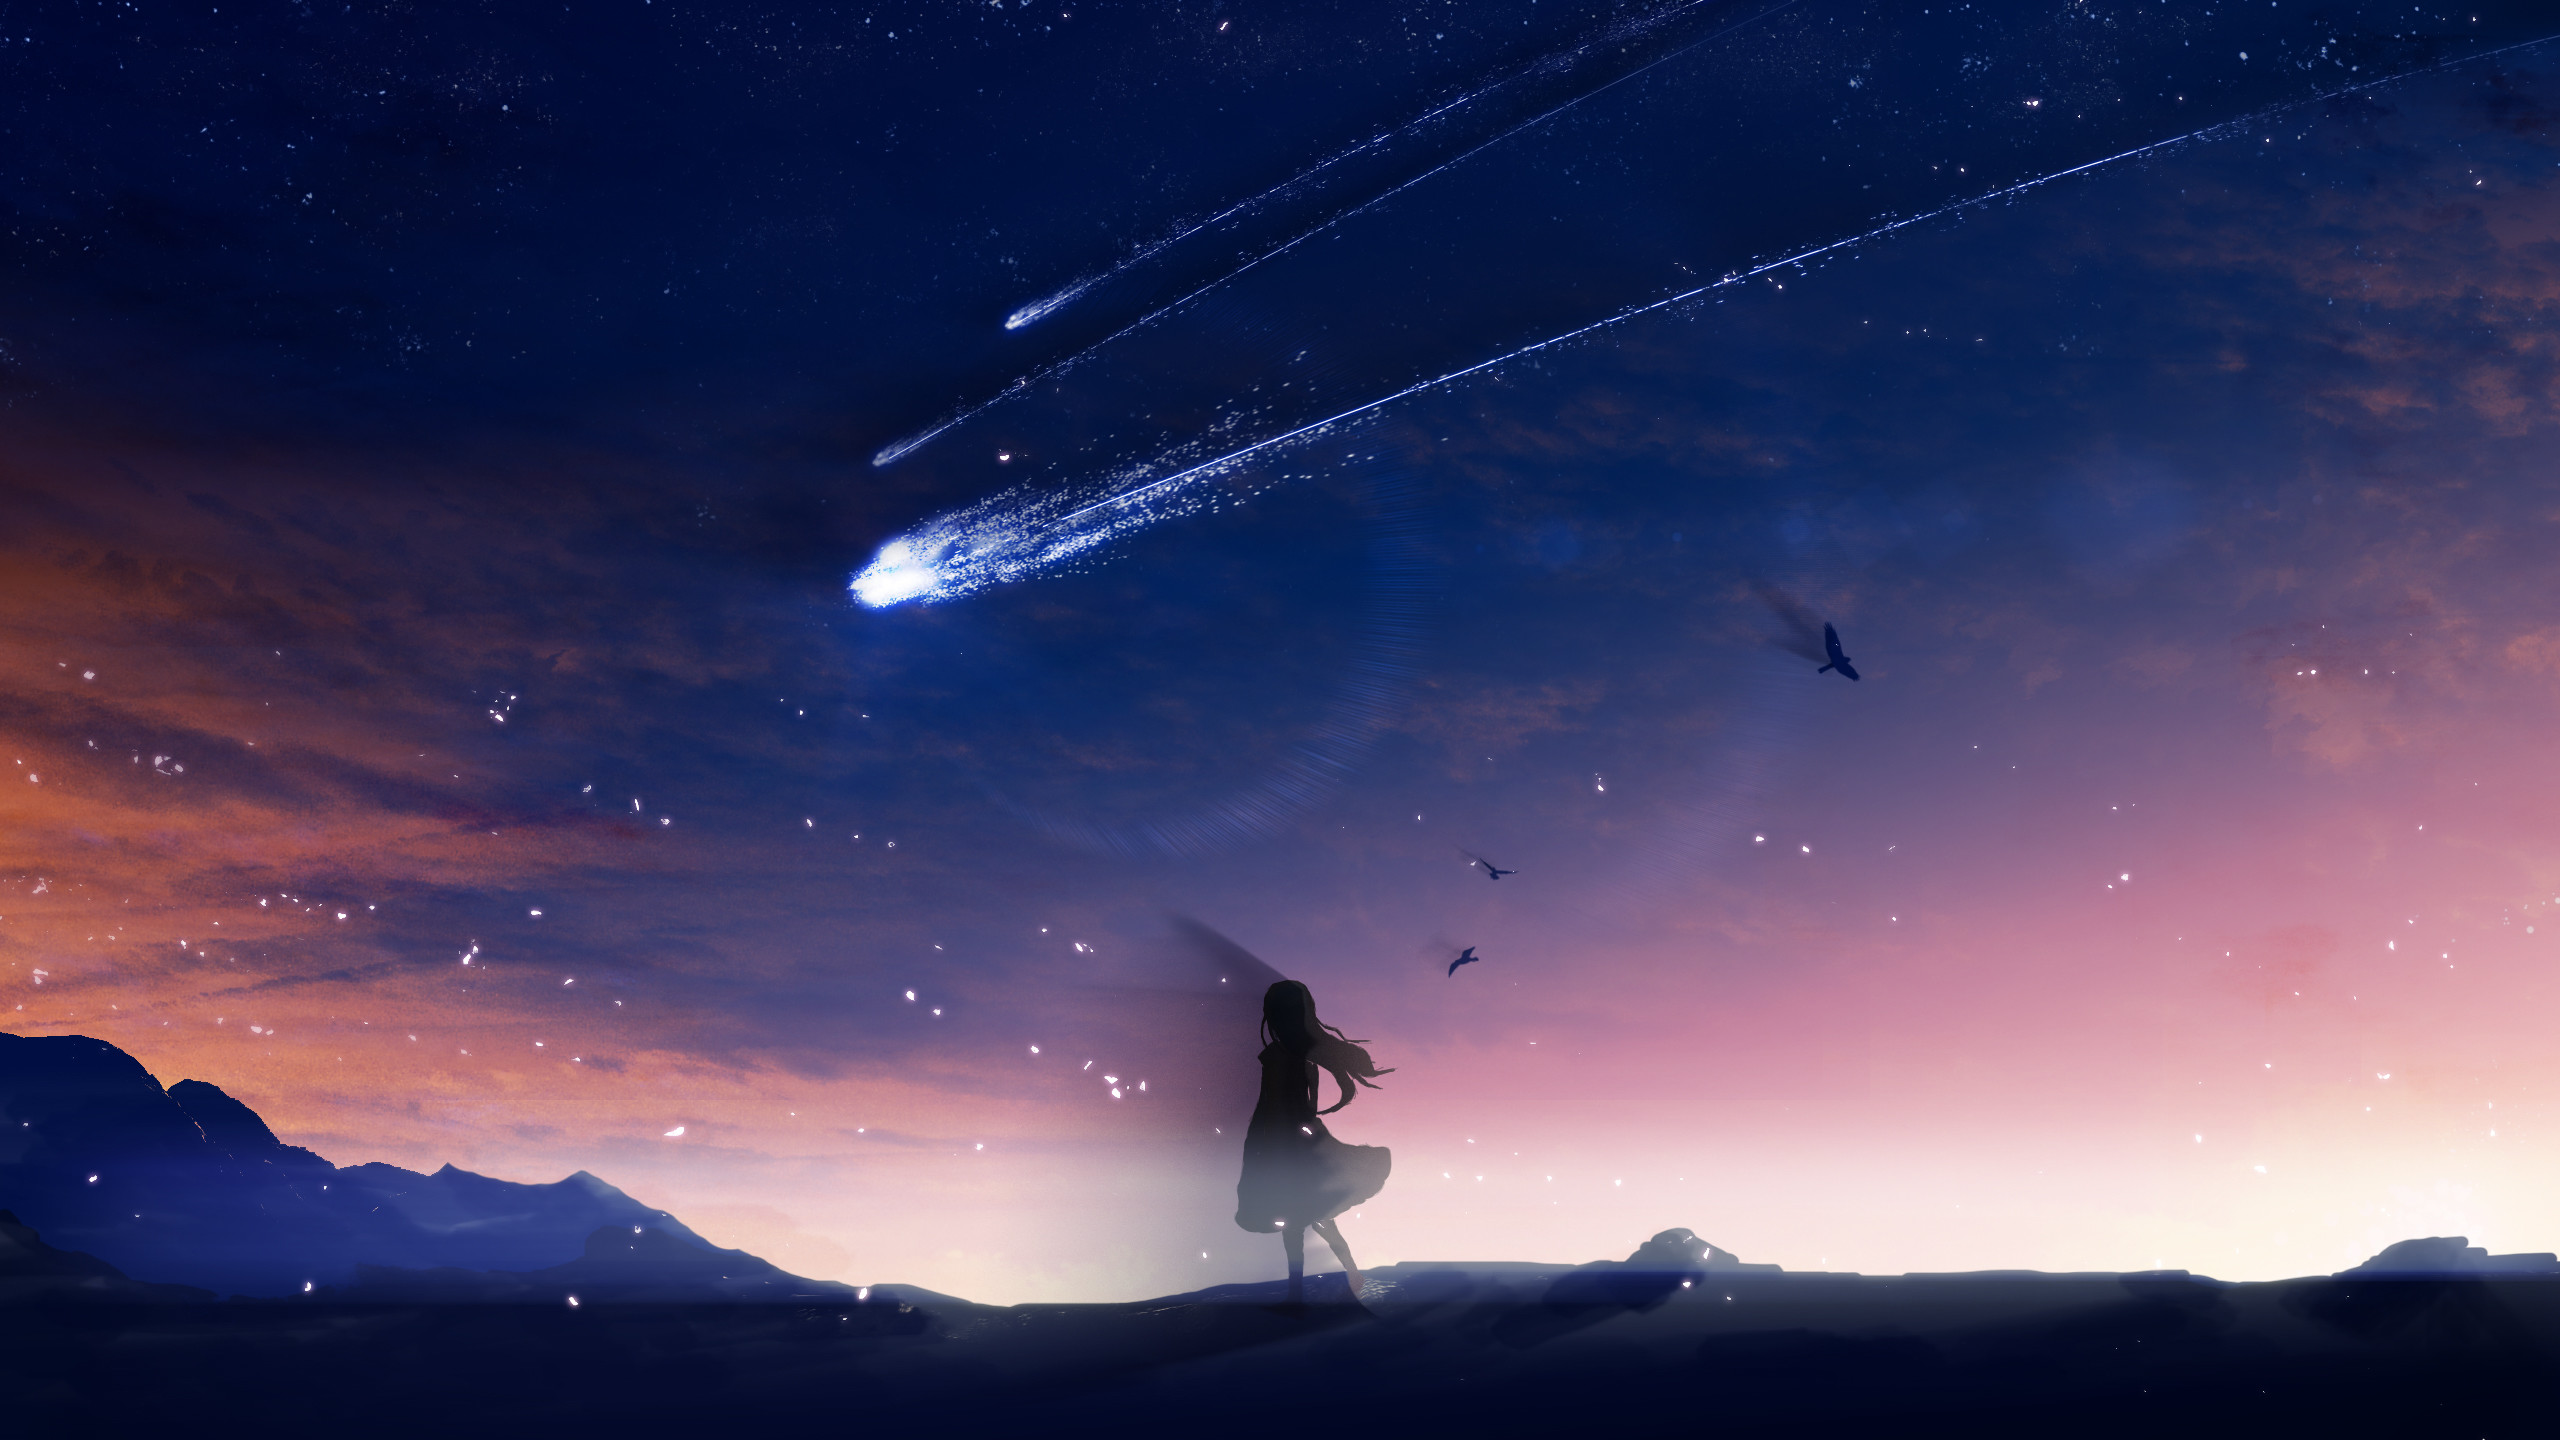 anime wallpaper 1440x900,himmel,wolke,atmosphäre,nacht,horizont